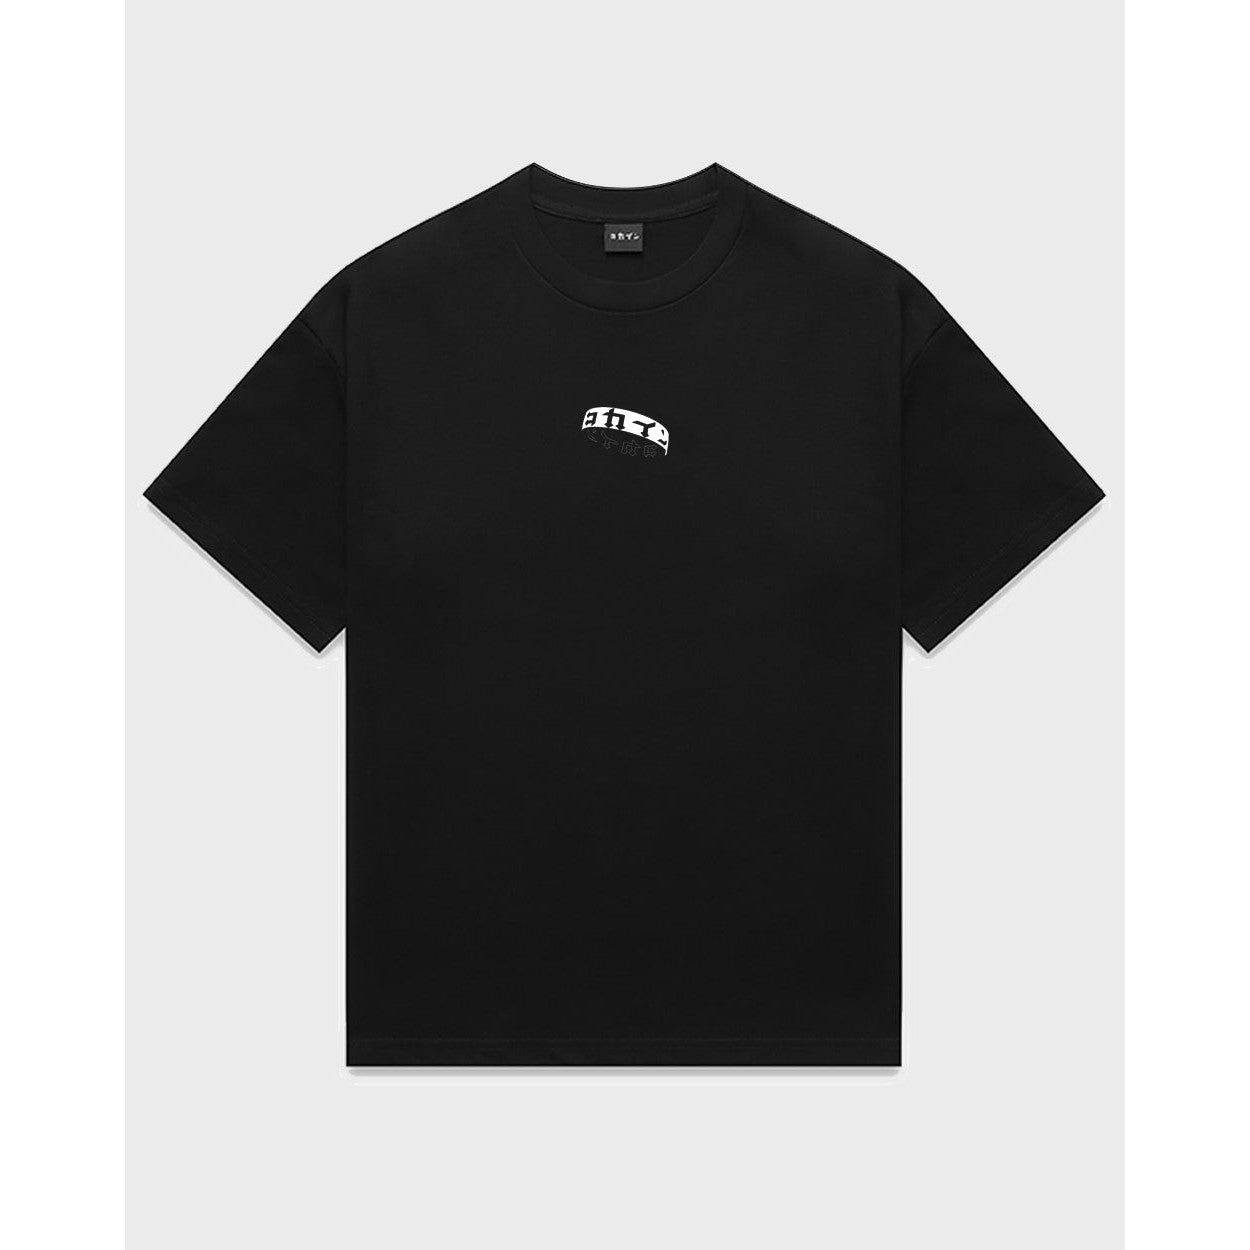 Kokaine - "8 Years" T Shirt (Black)